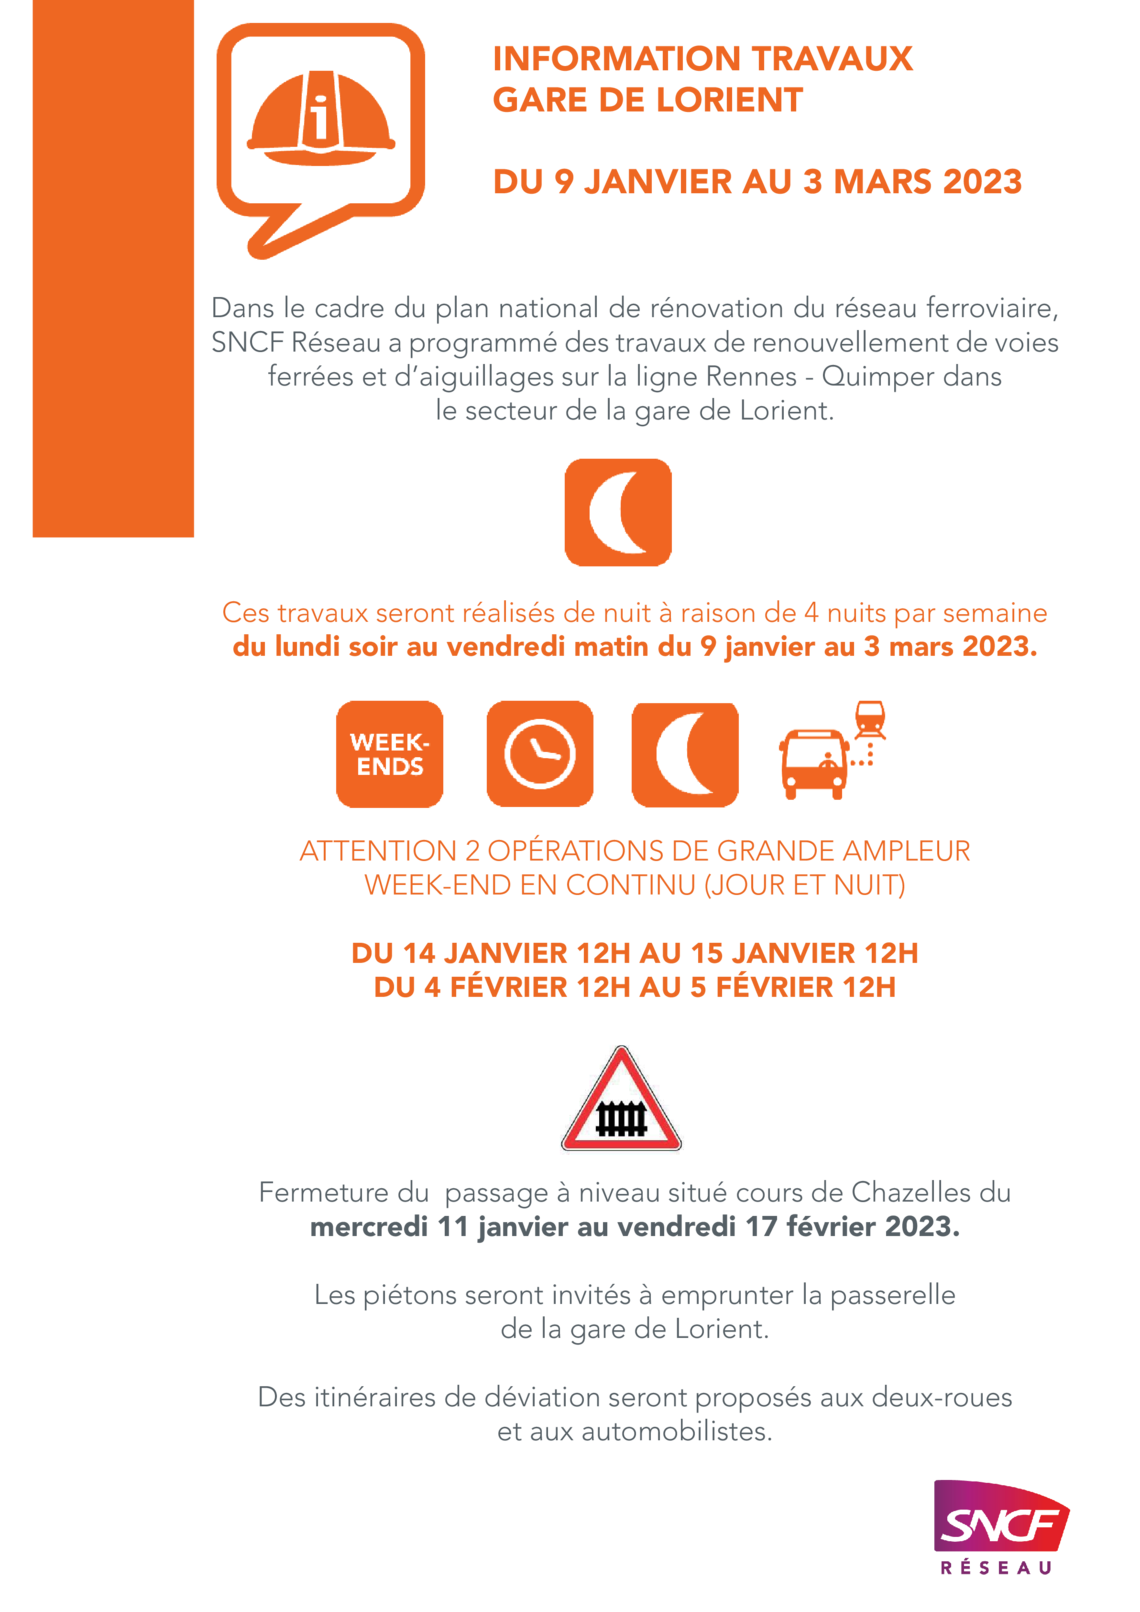 Affiche de la SNCF informant des travaux. Cliquez pour agrandir